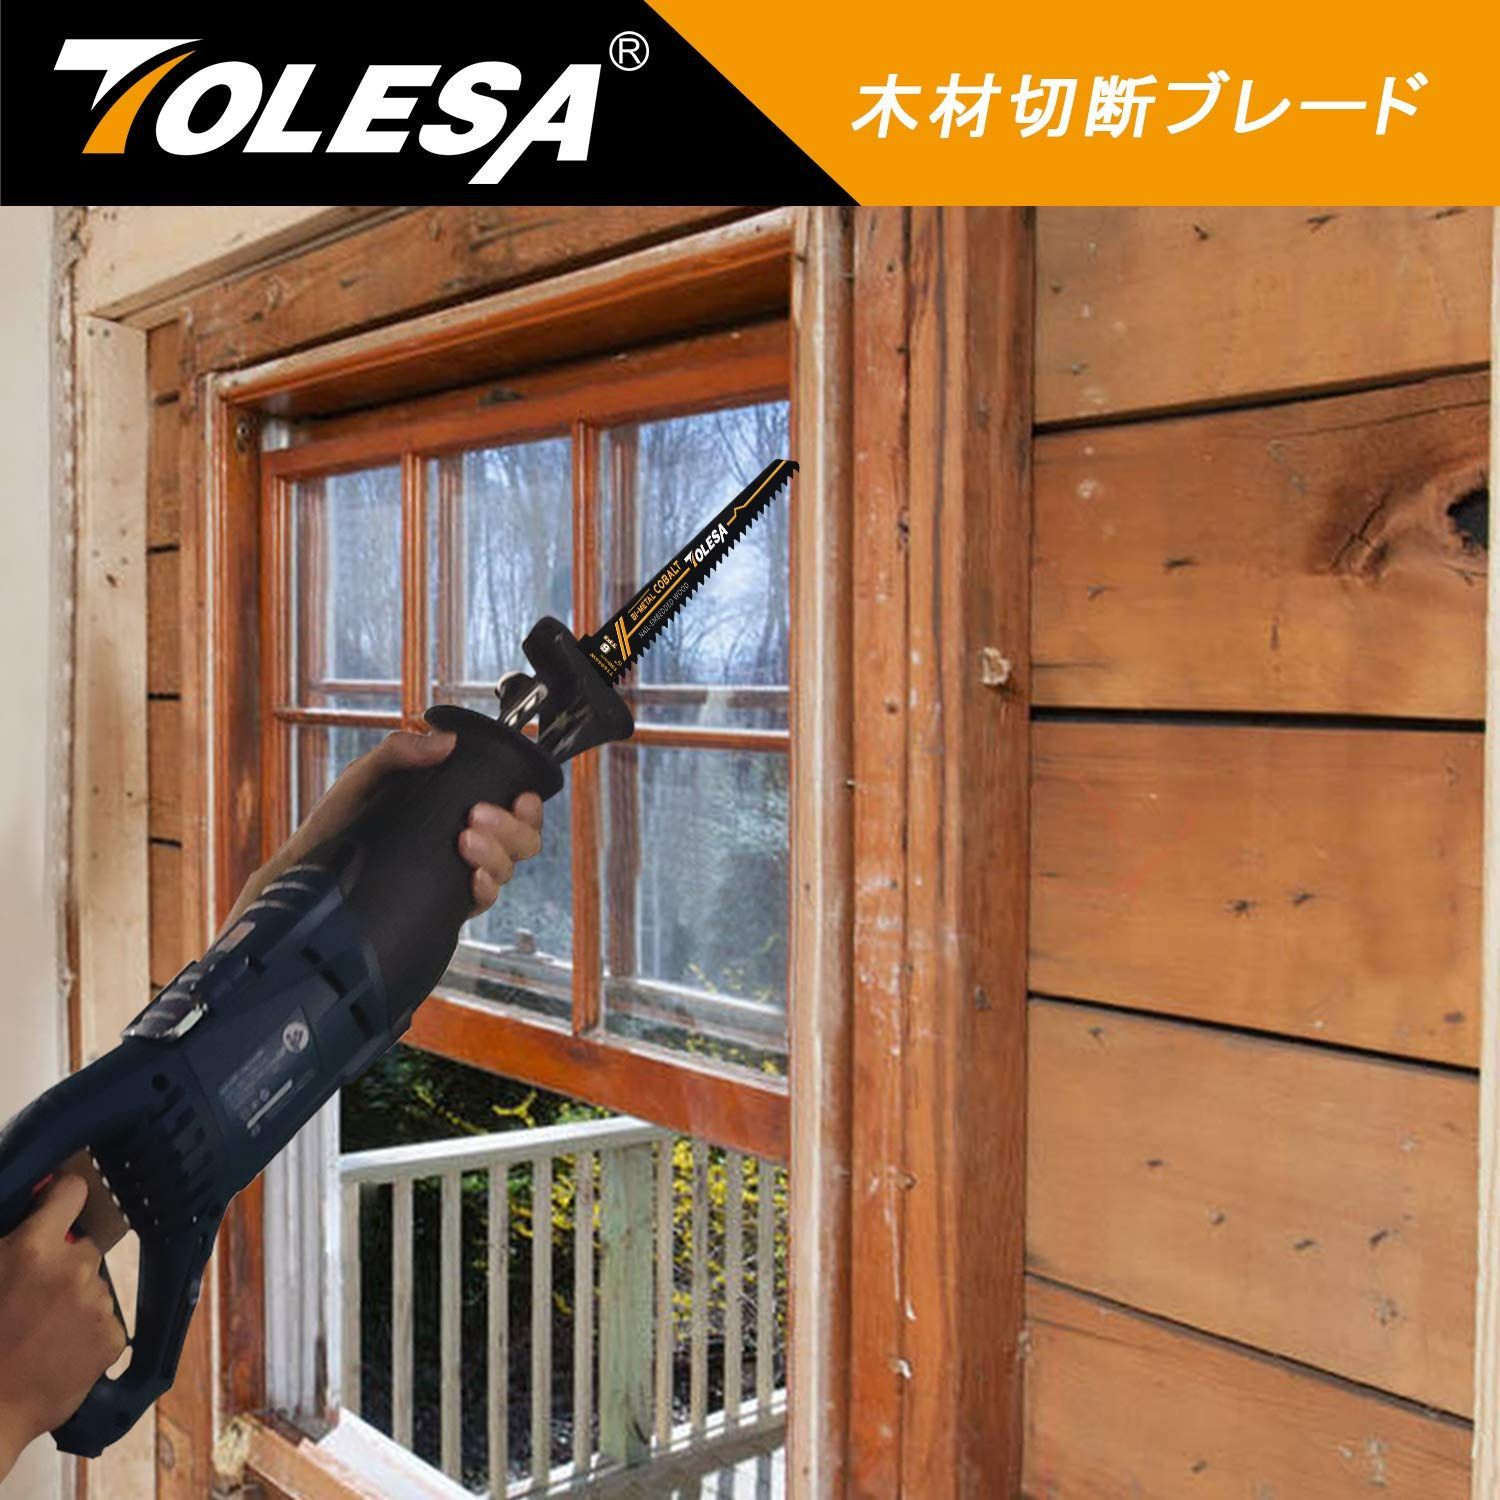 TOLESA レシプロソー替刃 6山 300mm バイメタル コバルト ネイル埋め込み木材切削 セーバーソーブレード 5枚入れ